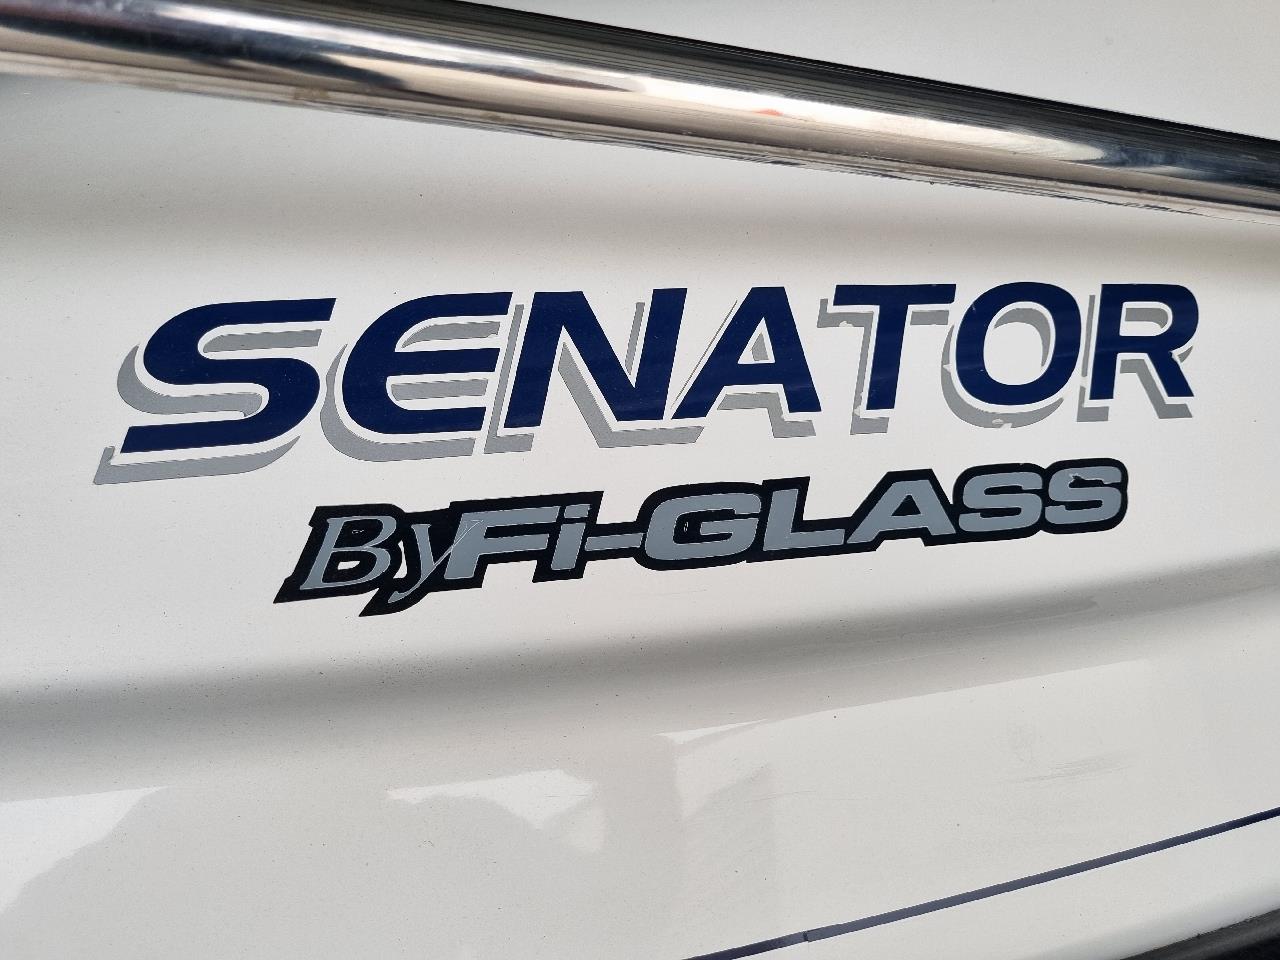 2005 Fi-glass Senator